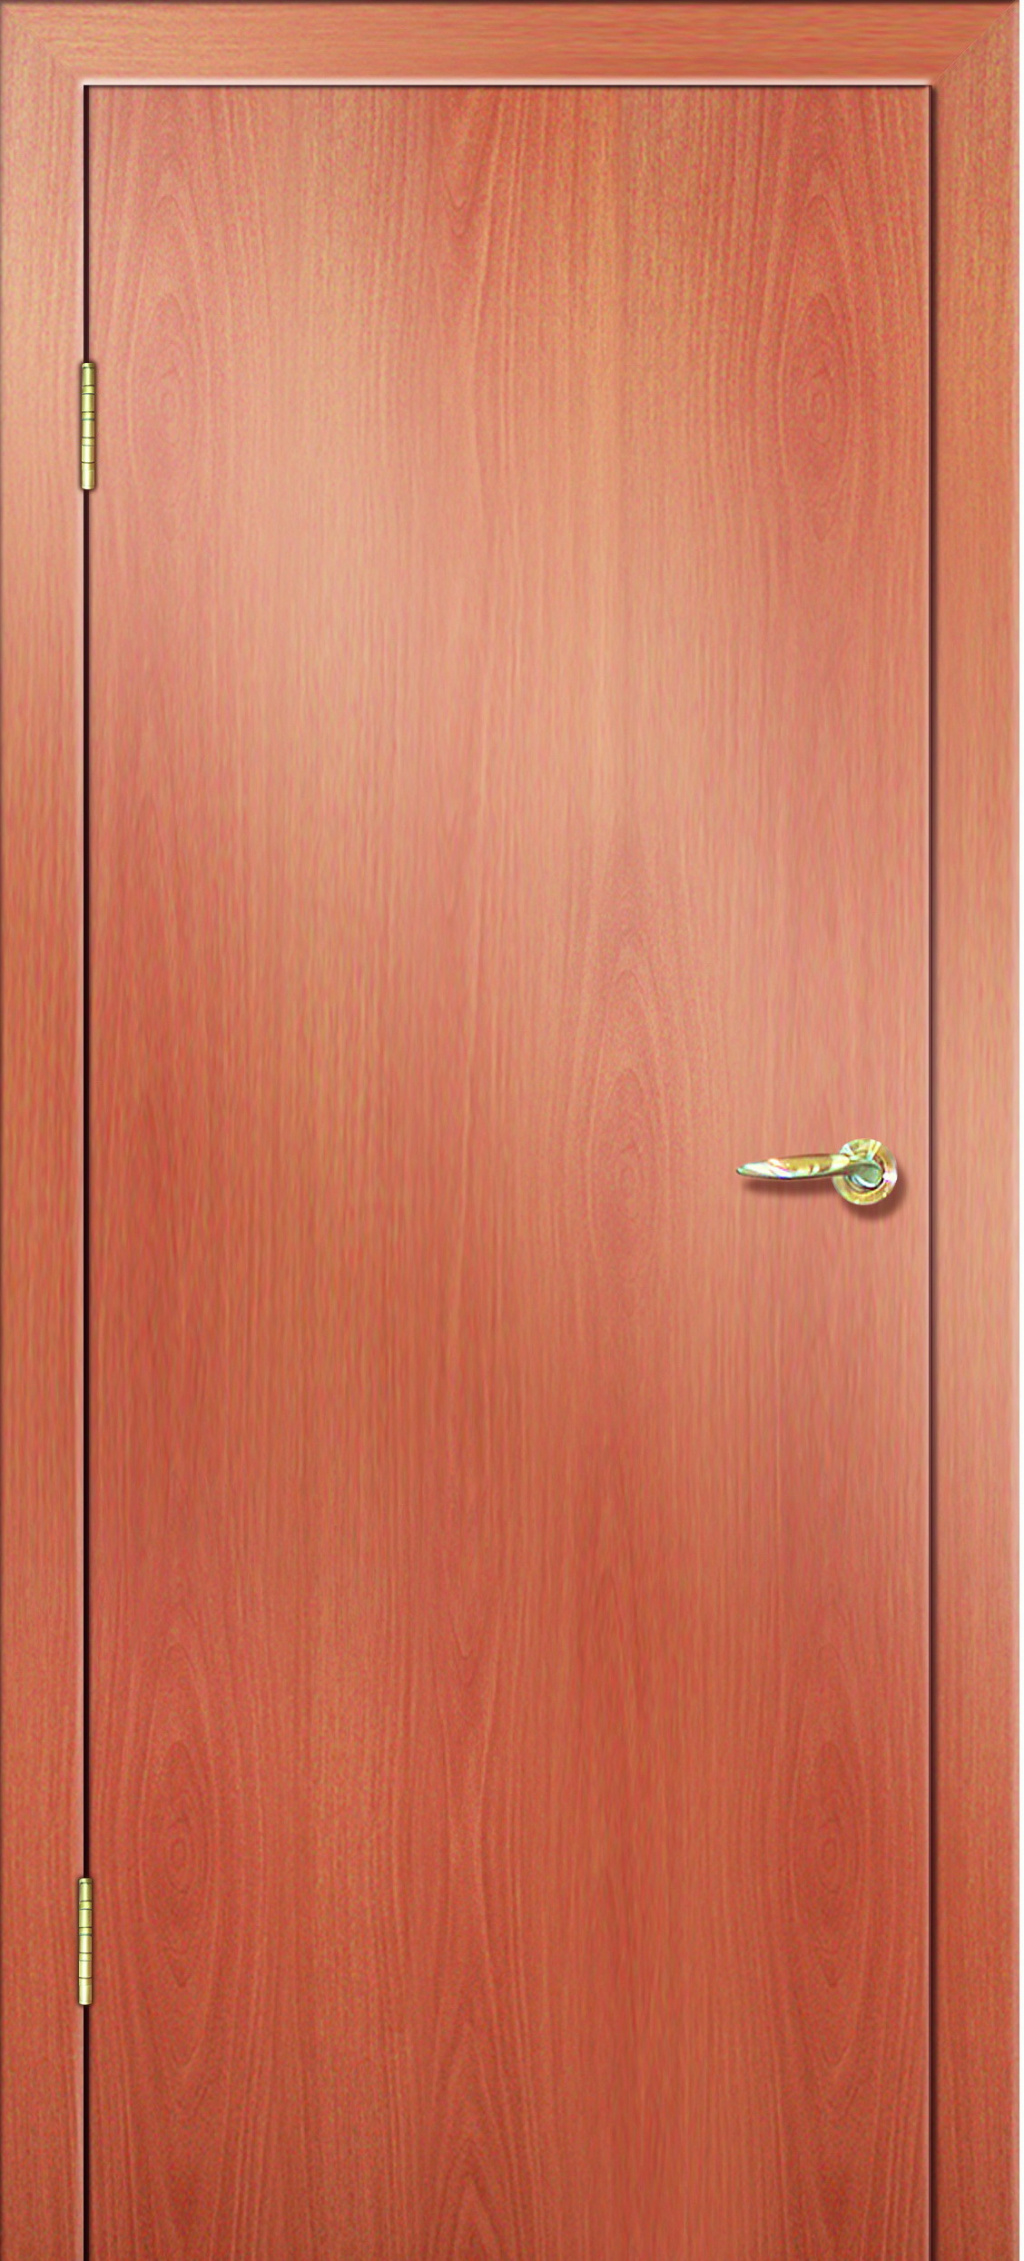 Дверная Линия Межкомнатная дверь ПГ 01 Эконом, арт. 7522 - фото №1